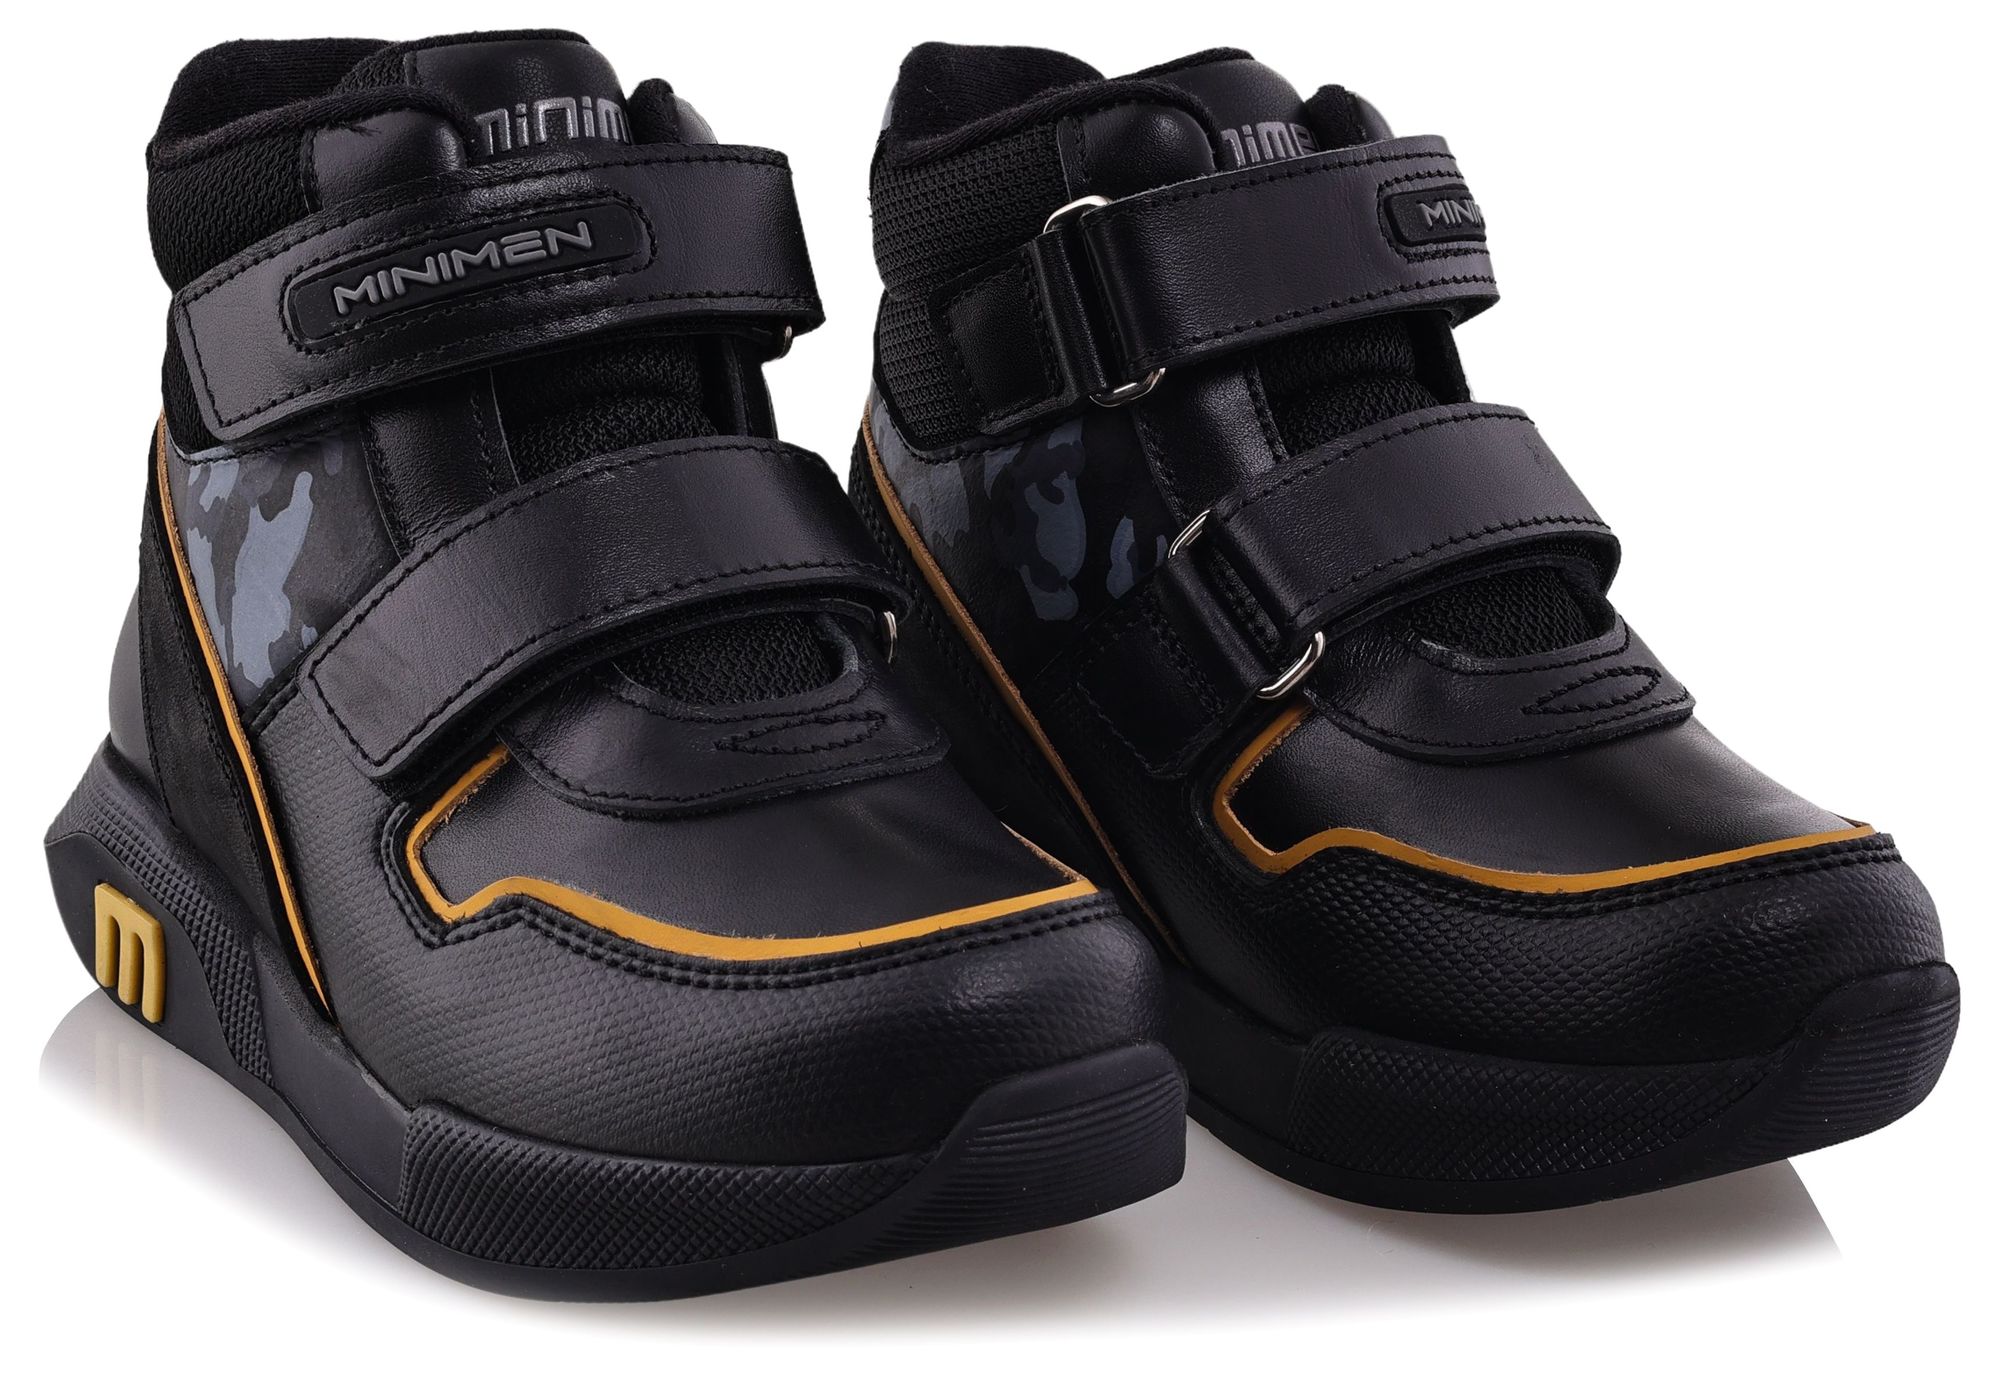 Ботинки Minimen для мальчиков, чёрные, размер 32, 2654-44-23B-01